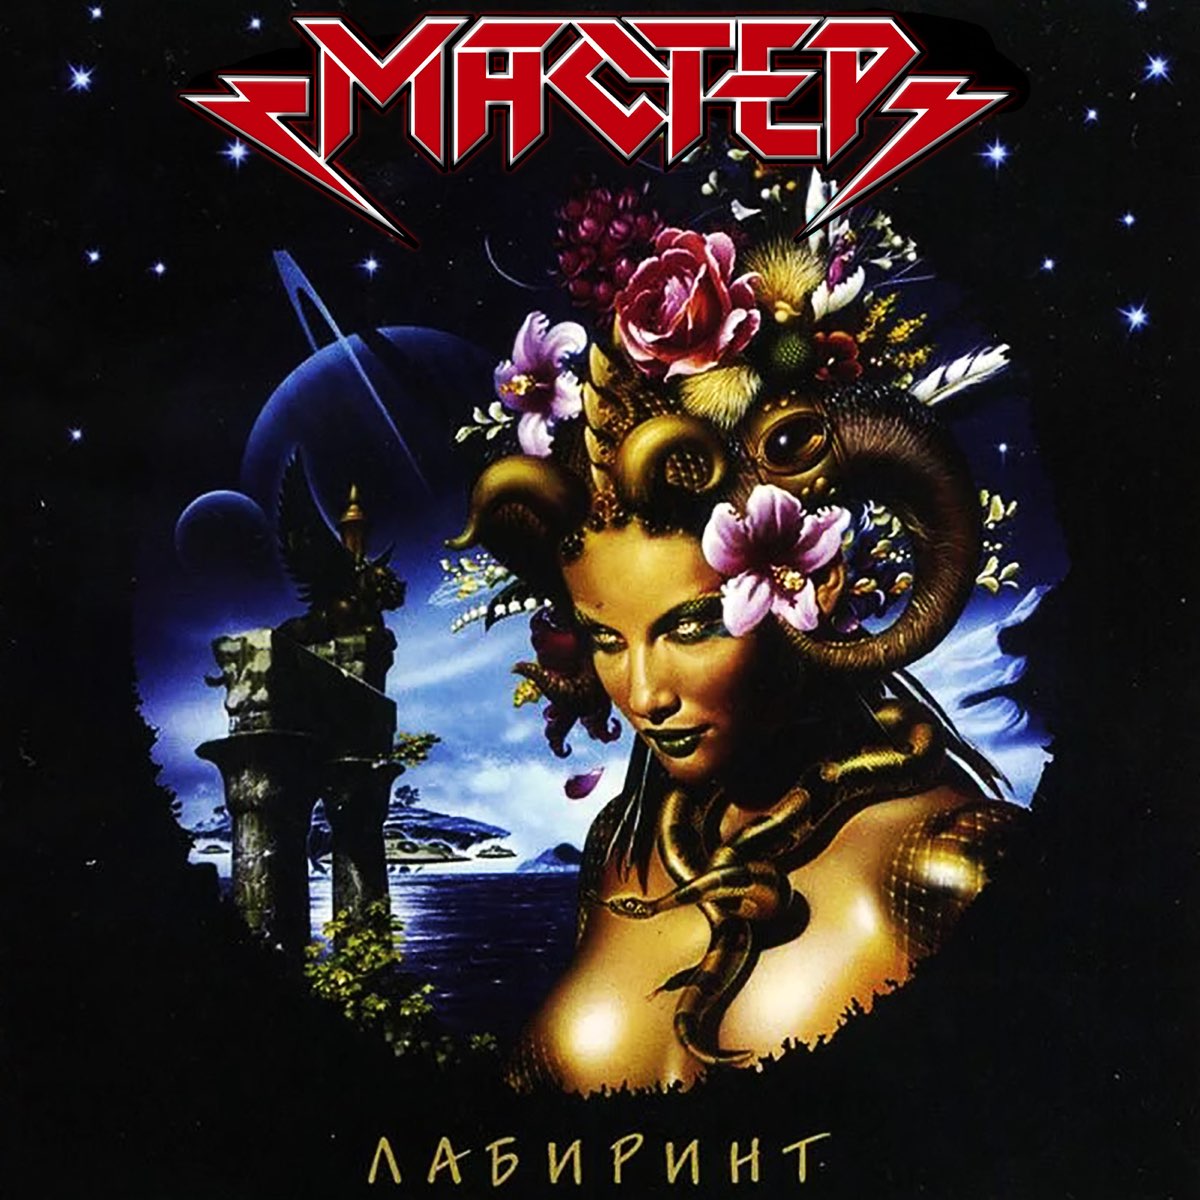 «Лабиринт» — шестой студийный альбом российской хэви-метал-группы «Мастер». Презентация записанного в частном порядке альбома состоялась 19 мая 2000 года в «Р-Клубе»; в официальном издании диск вышел в 2001 году на лейбле CD-Land.